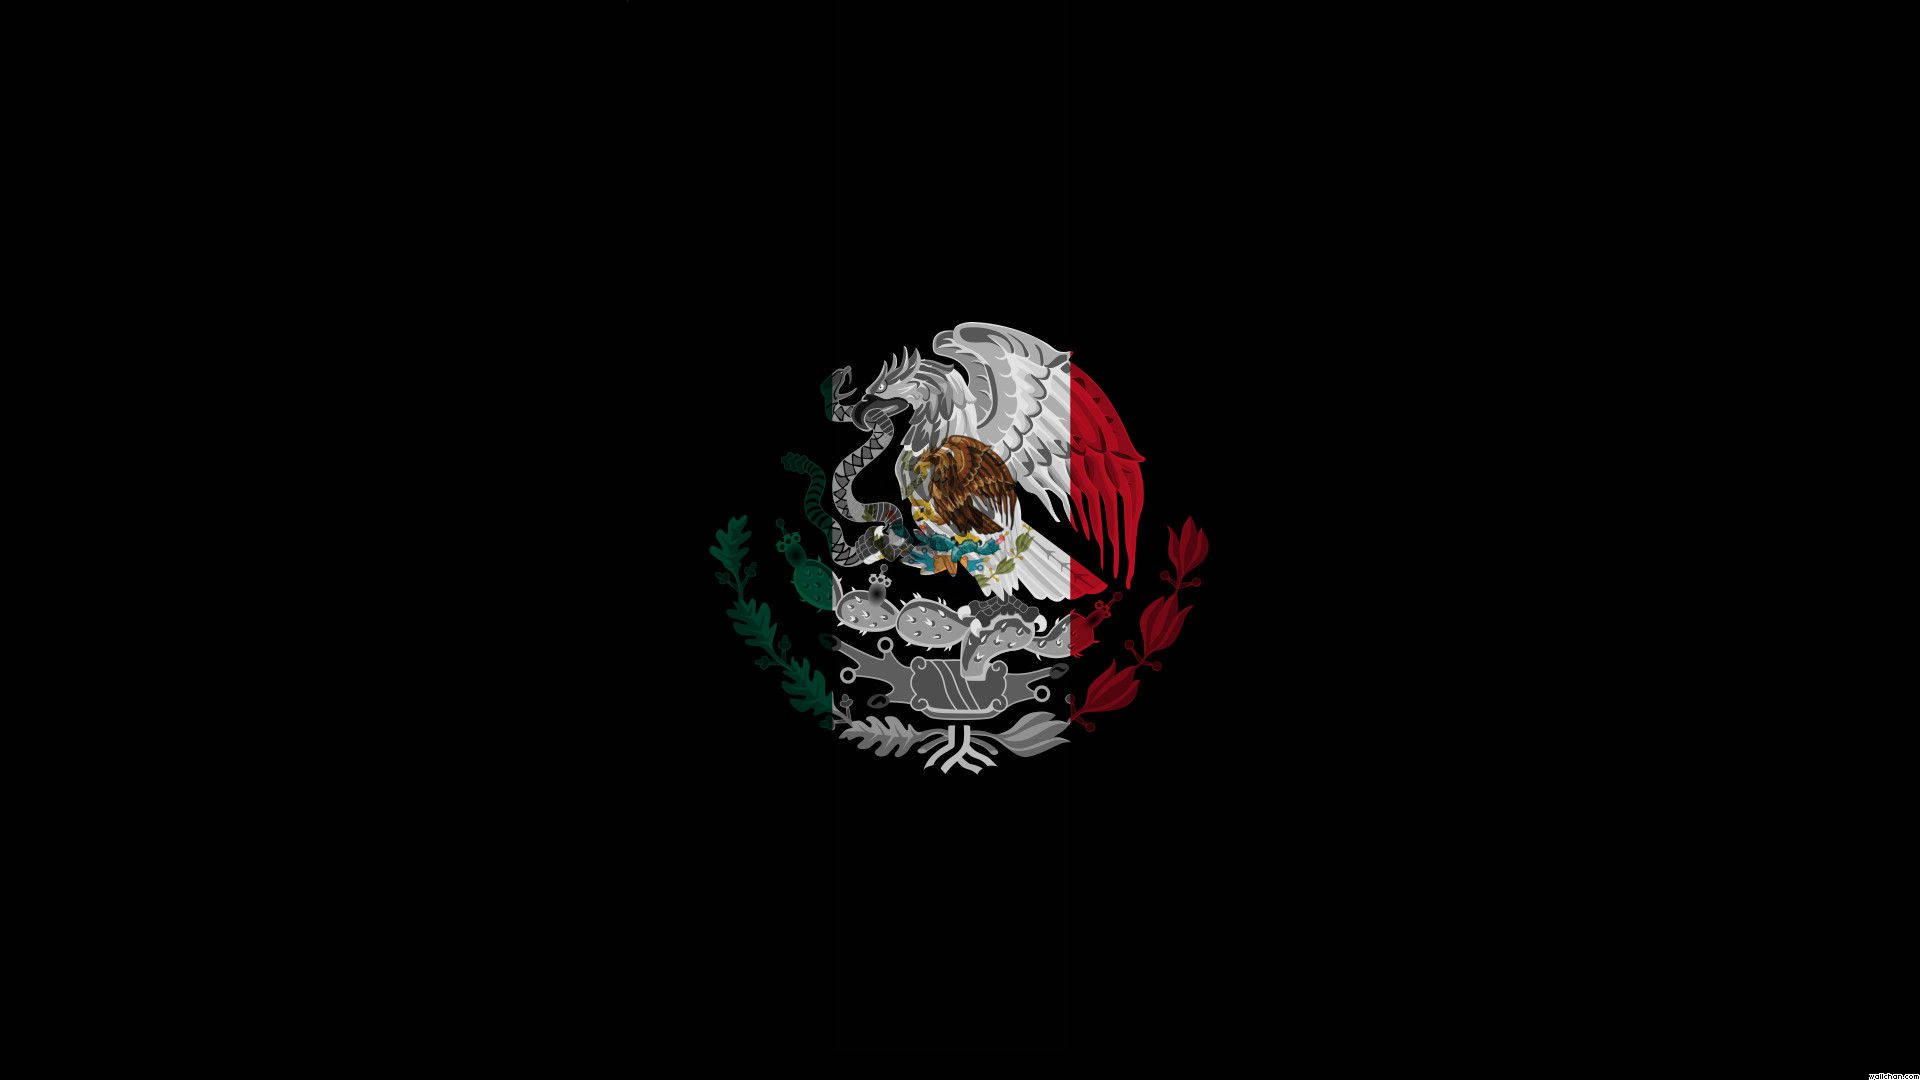 Mexican Pride Wallpaper